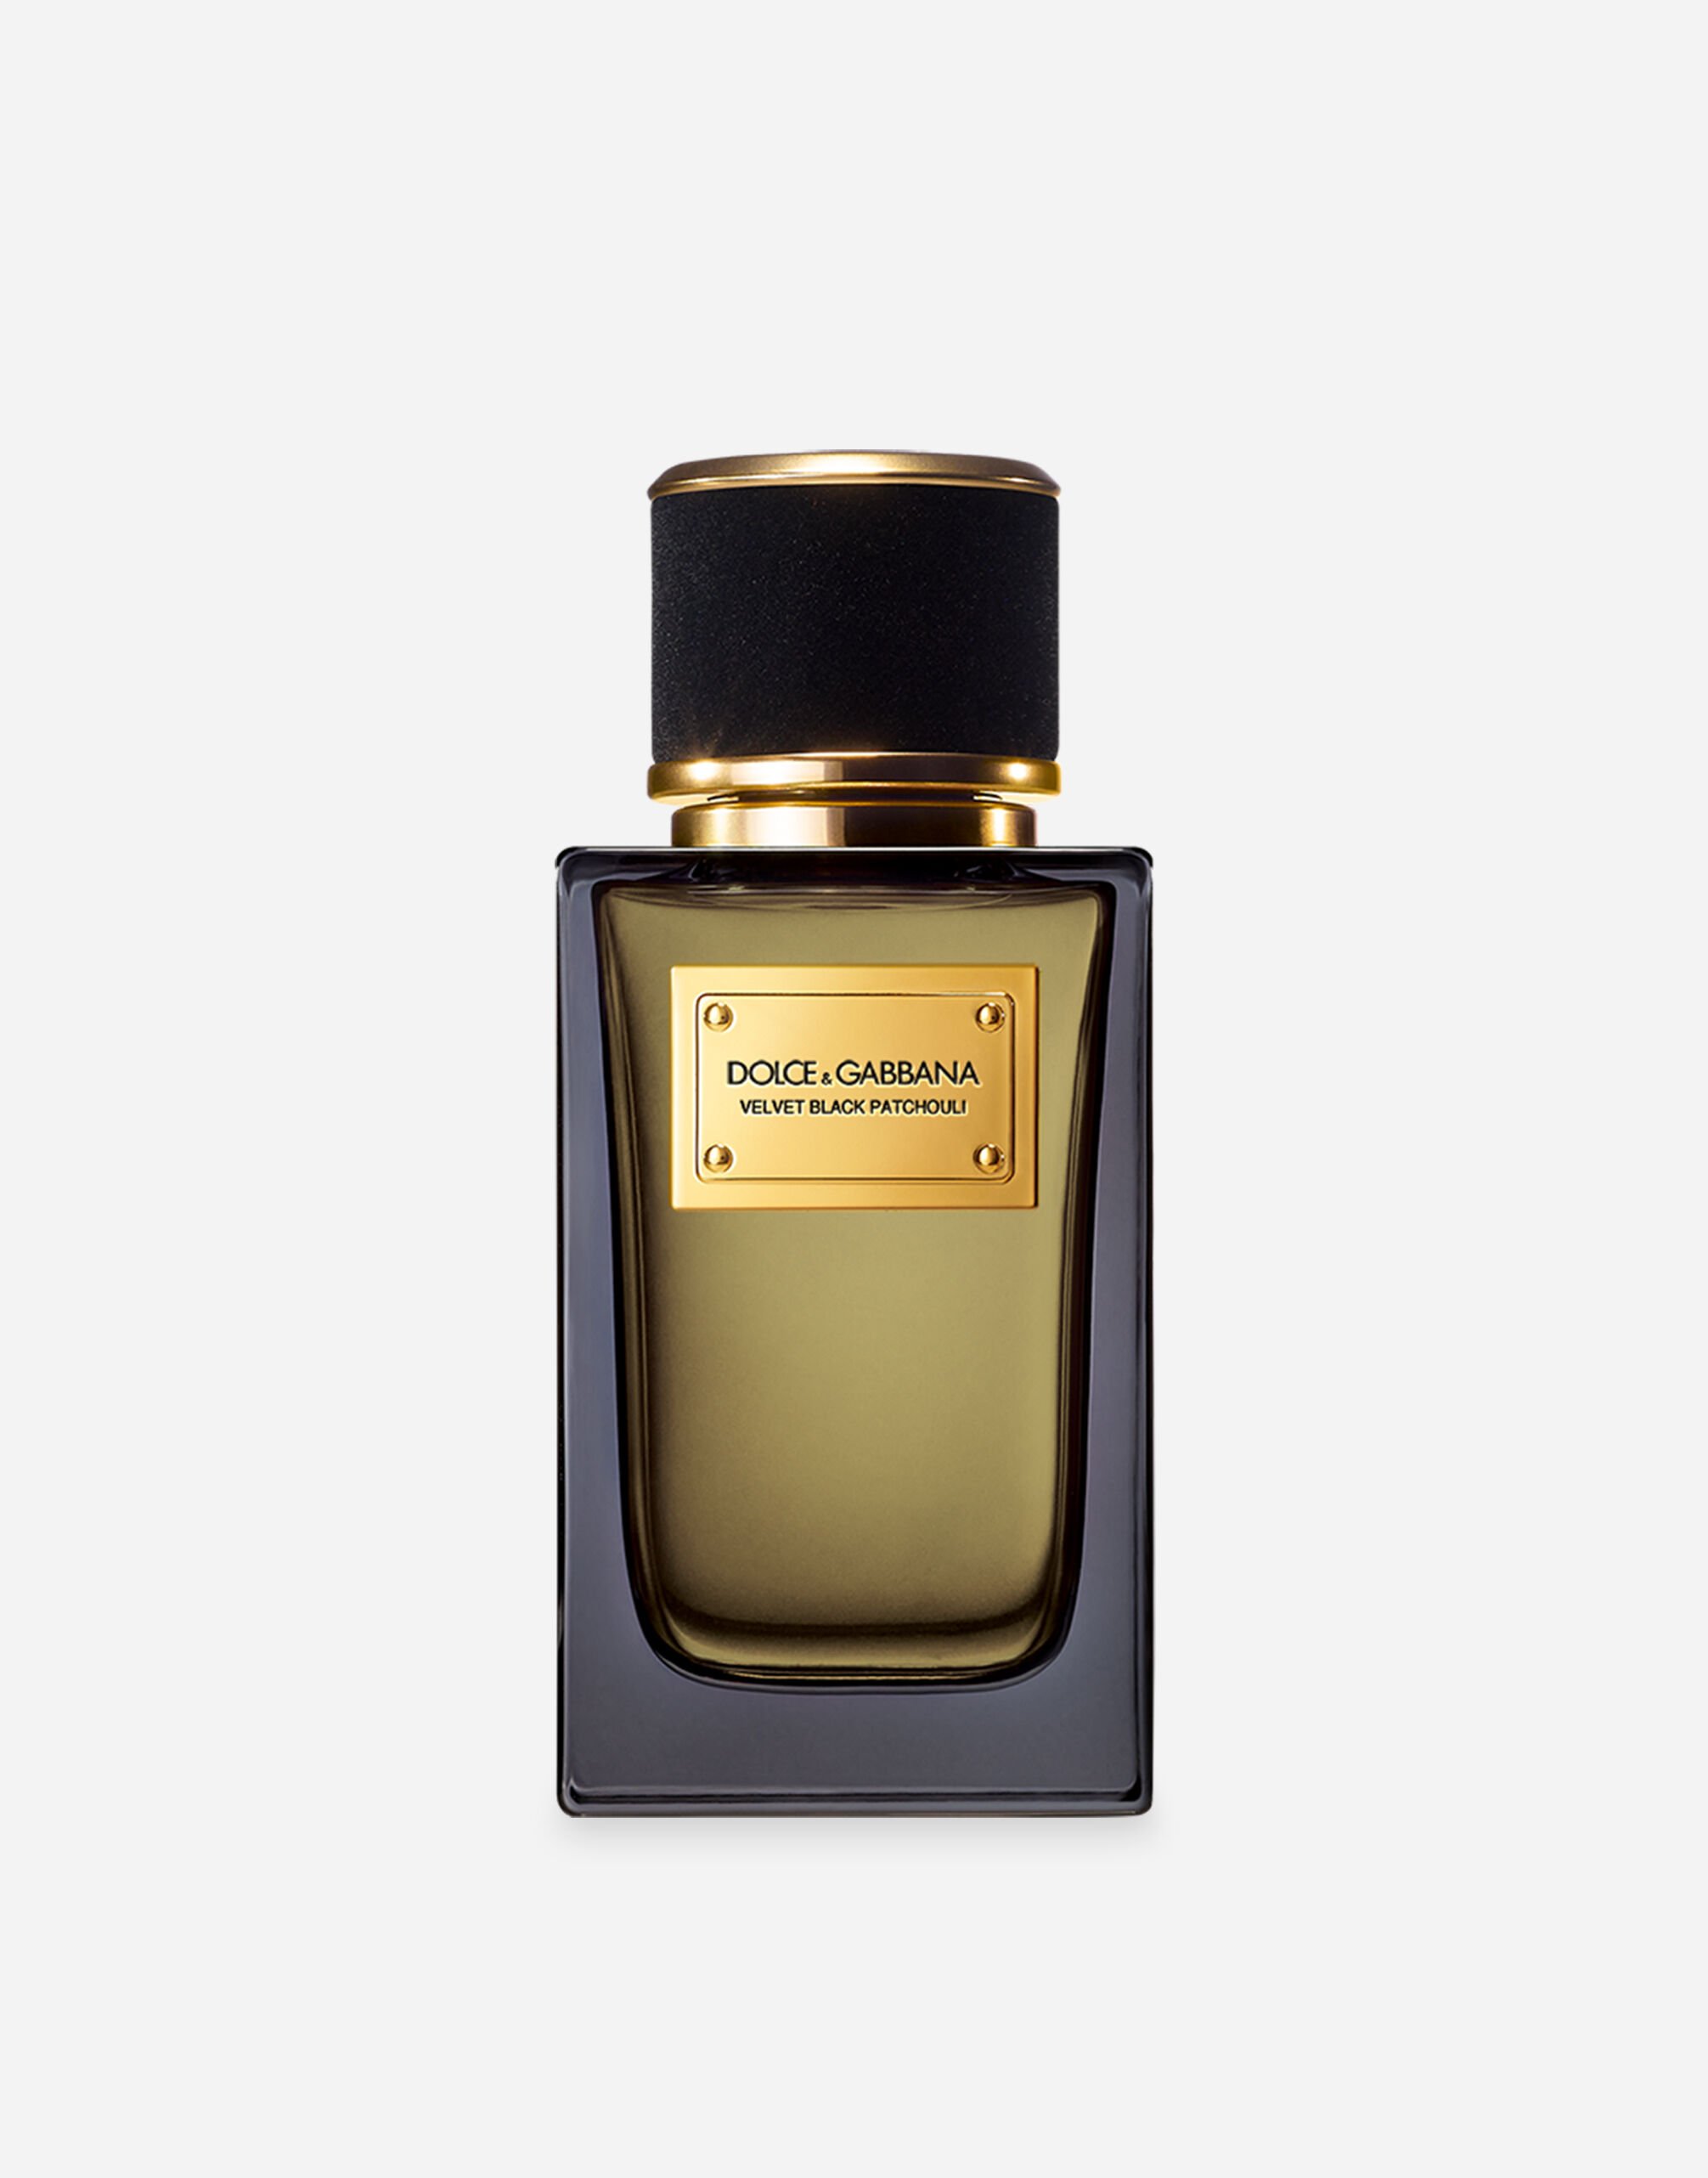 Dolce & Gabbana Velvet Black Patchouli Eau de Parfum - VP6974VP243